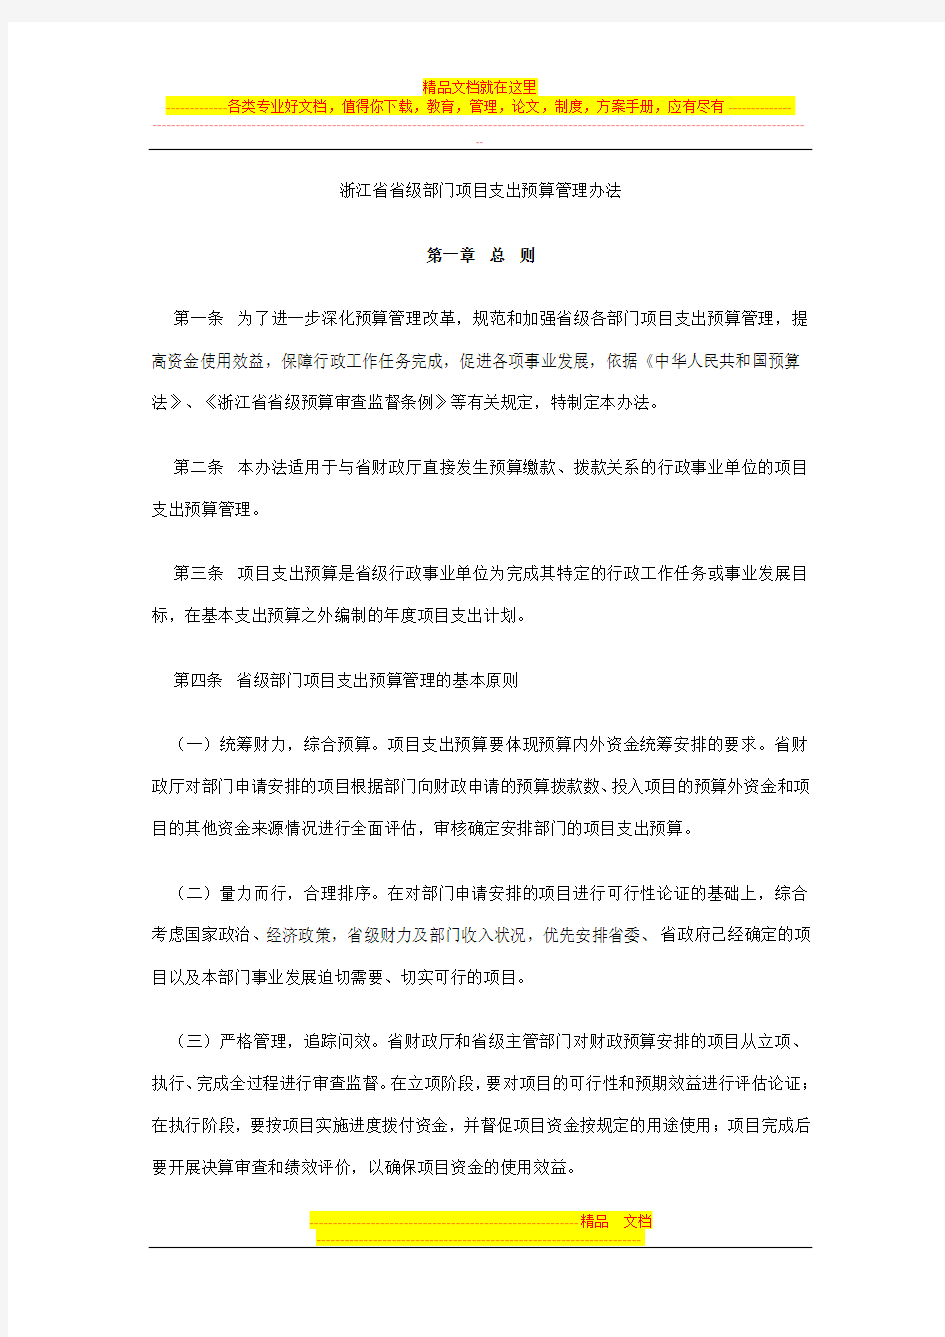 浙江省省级部门项目支出预算管理办法